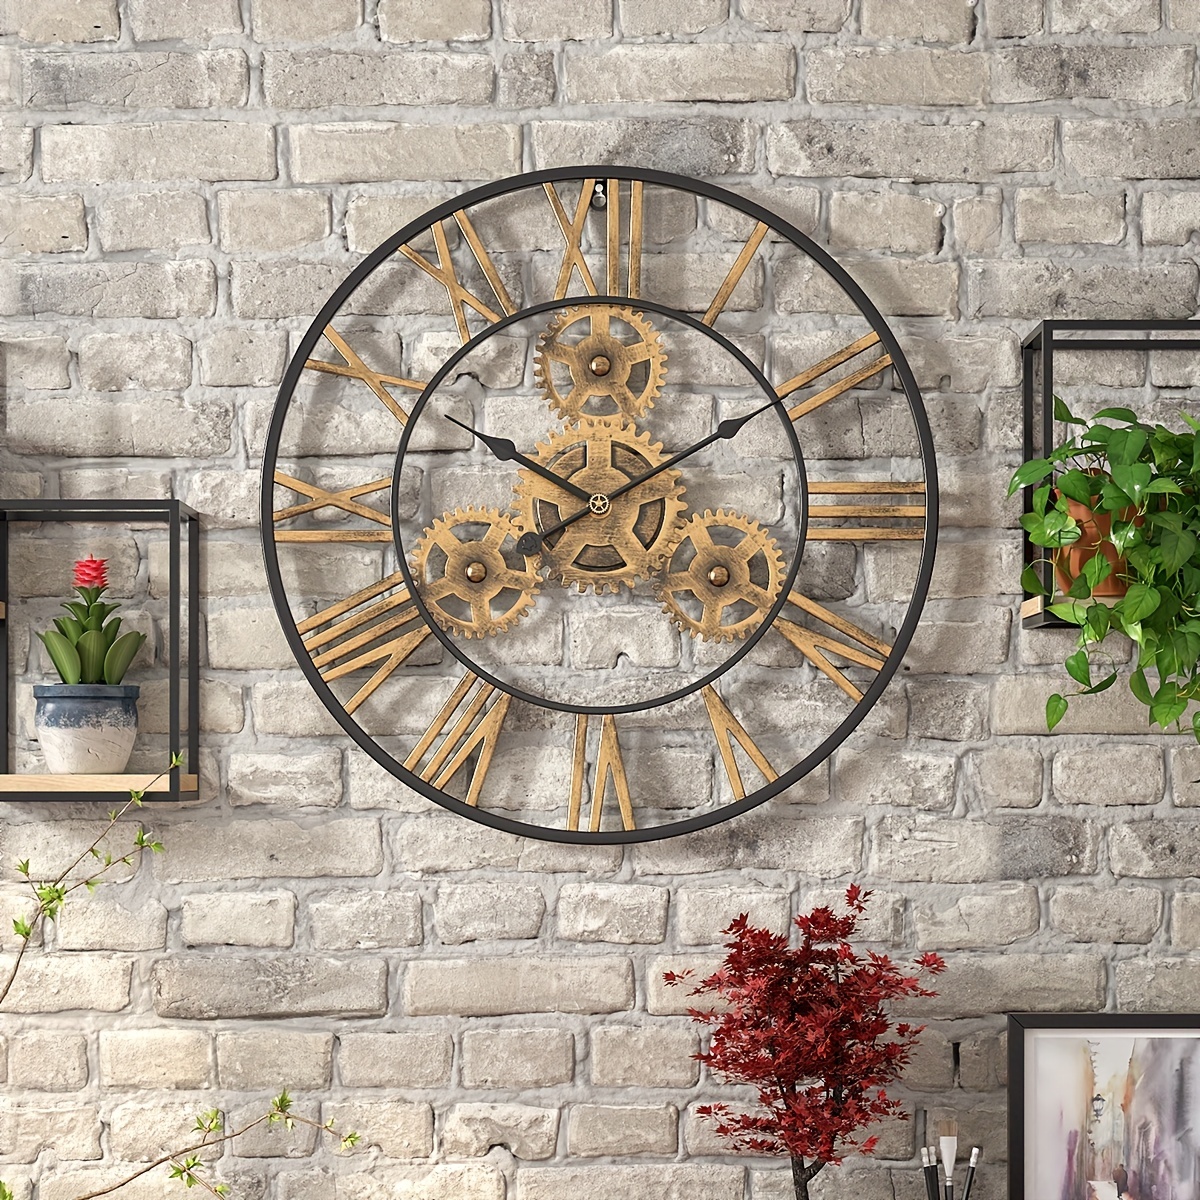 Reloj de pared adhesivo para Hogar y Oficina en cocina - TenVinilo